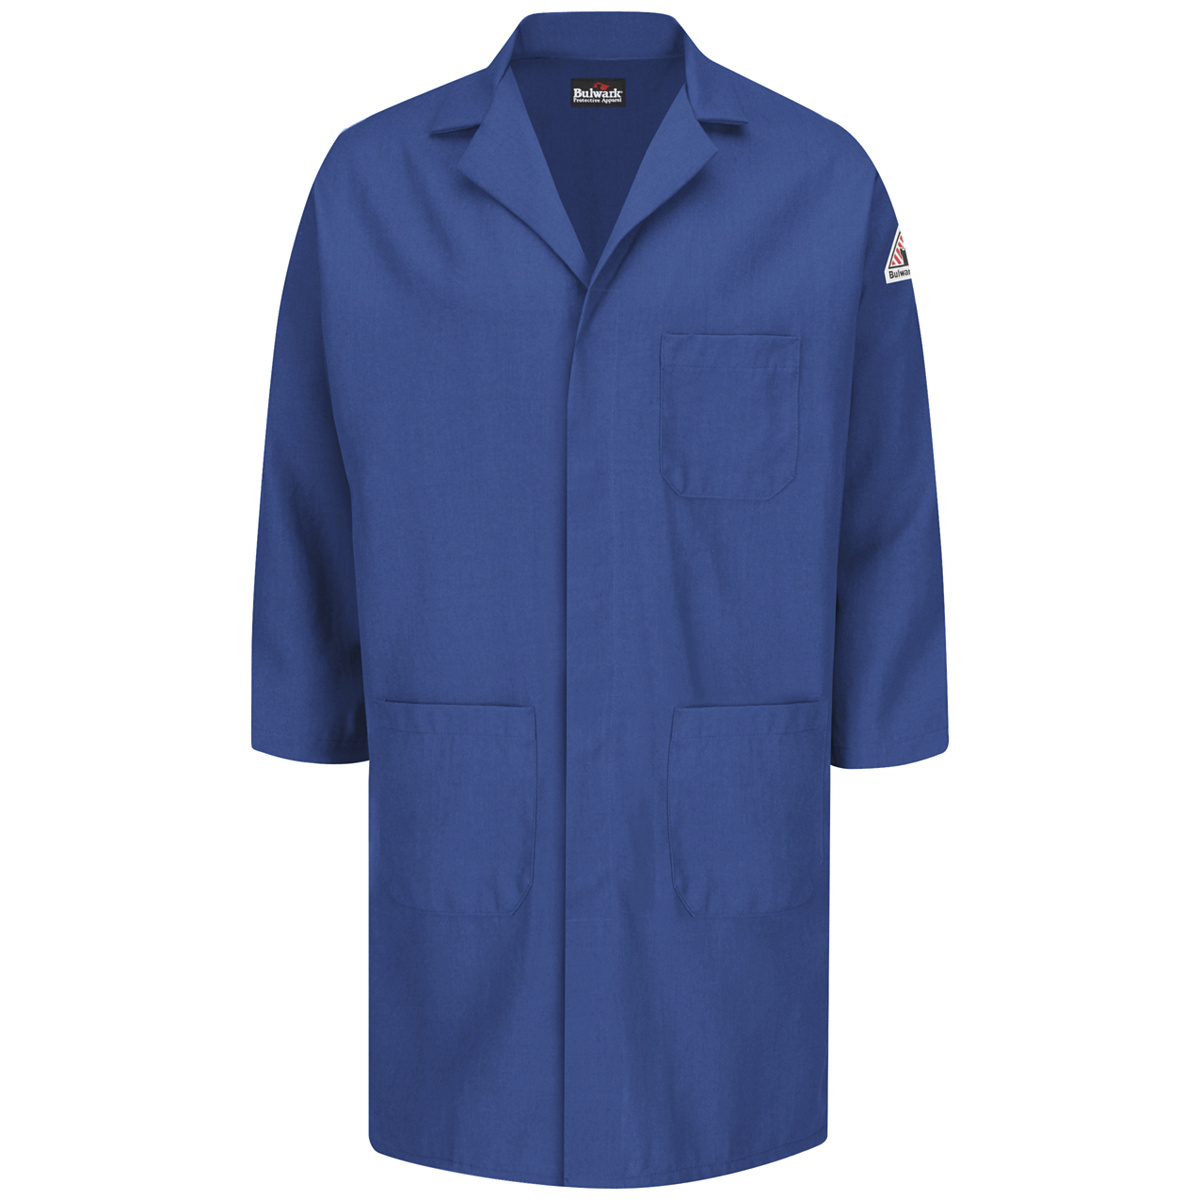 Bulwark® 4X Regular Royal Blue Nomex® IIIA/Nomex® Aramid/Kevlar® Aramid Flame Resistant Lab Coat With Snap Front Closure